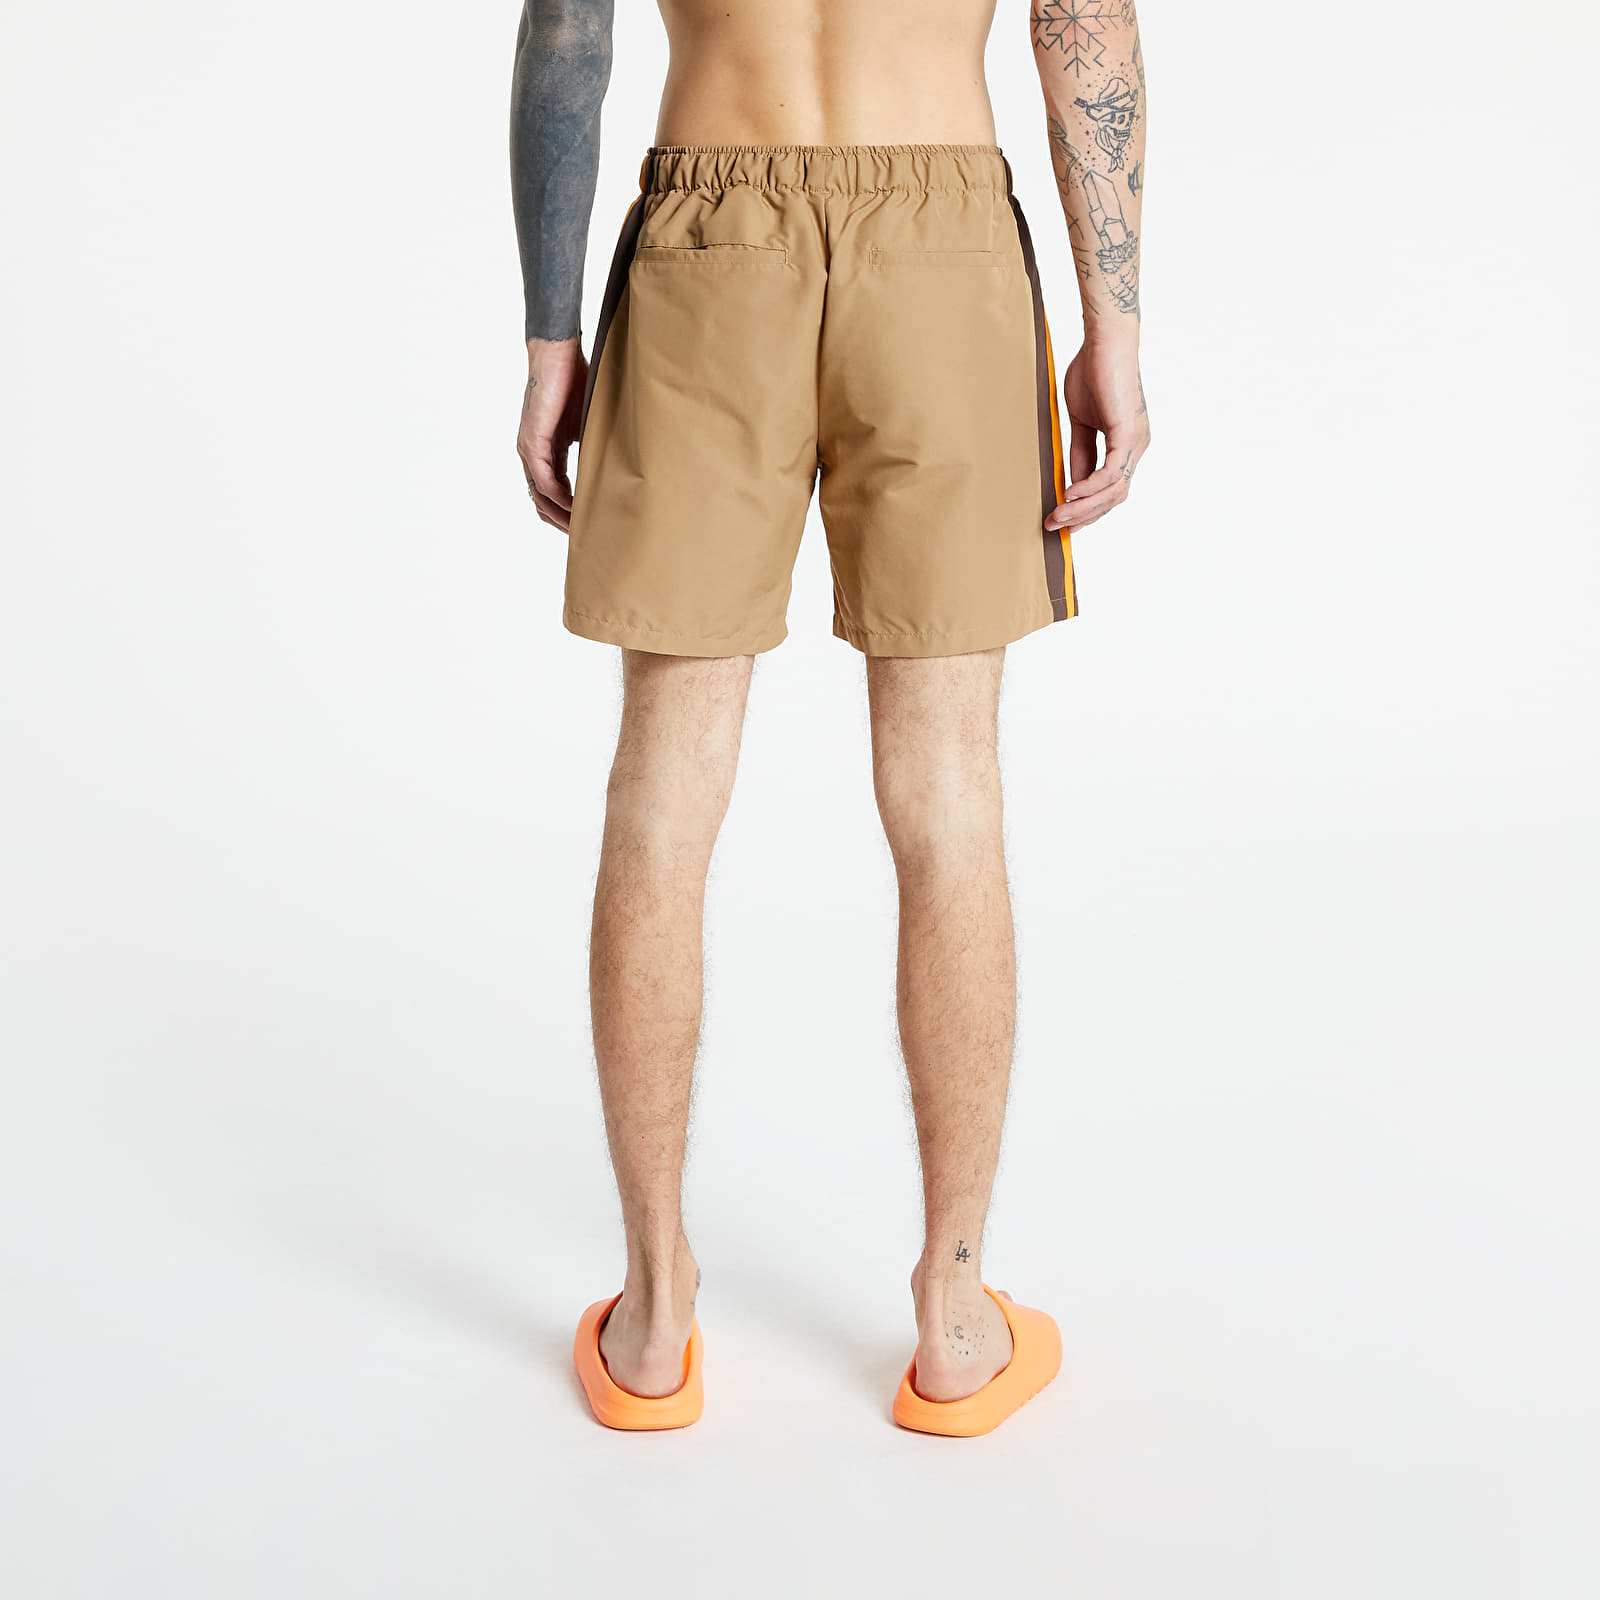 Shorts adidas Windshorts Human Made Cardboard/ Tangerine | Footshop